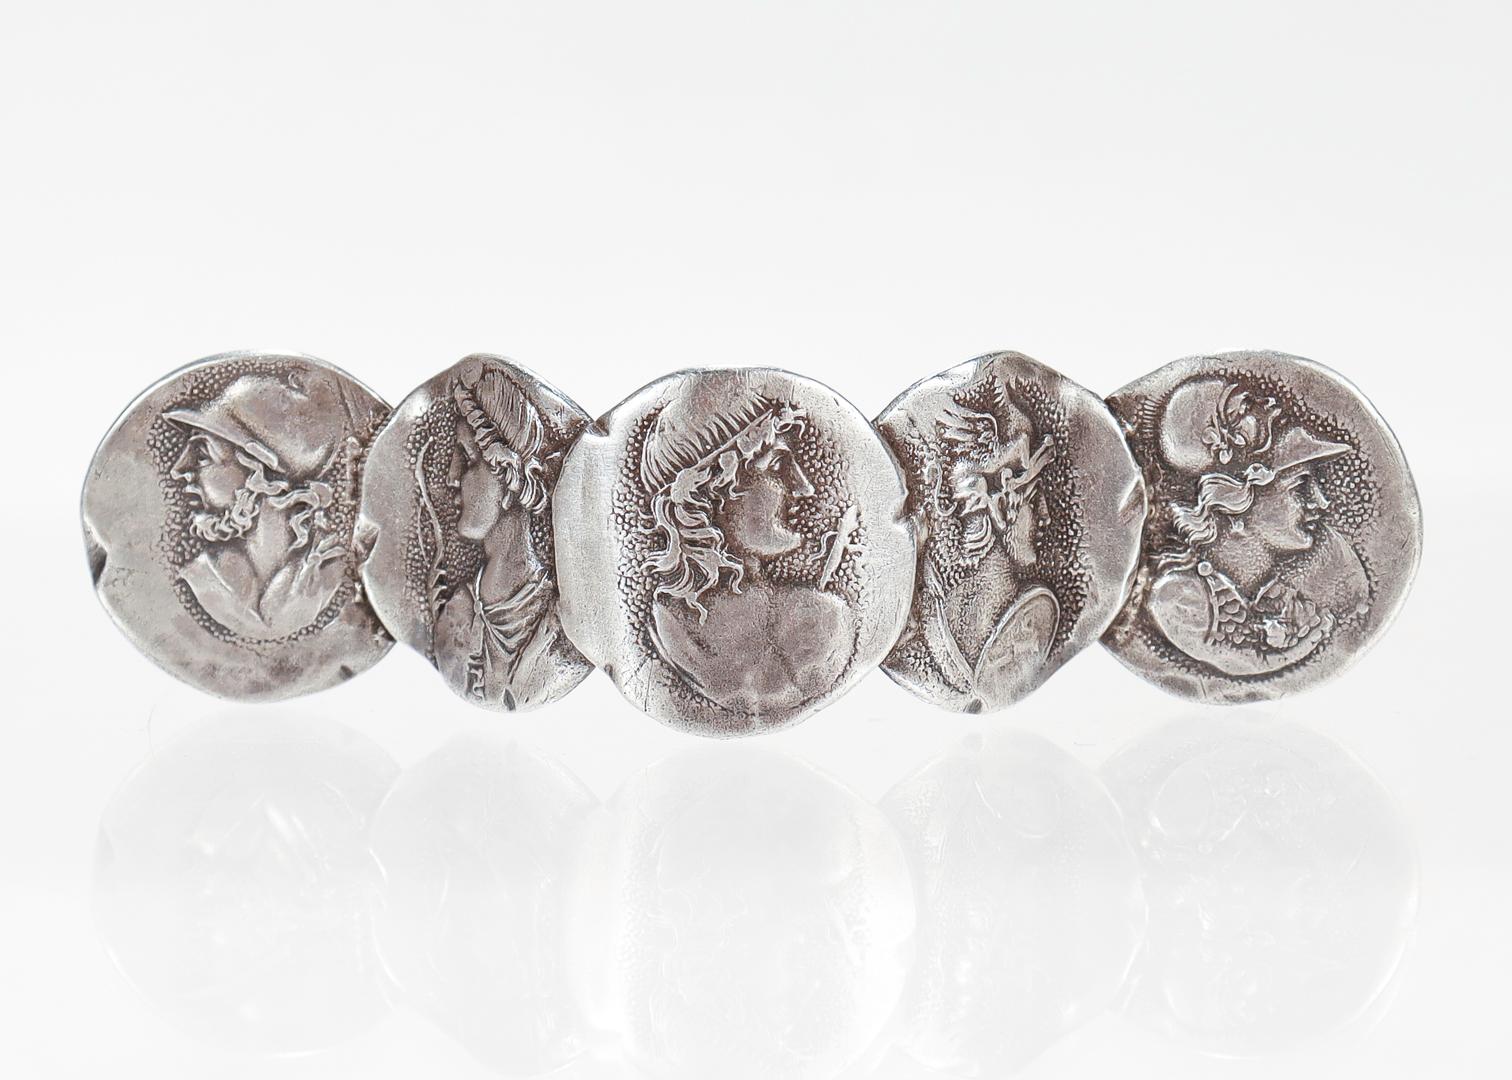 Eine schöne antike etruskische Medaillon-Brosche von Shiebler.

Aus Sterlingsilber.

Bestehend aus fünf miteinander verbundenen etruskischen Kameenmedaillons in Form eines Bogens. 

Rückseitig mit der Herstellermarke von Shiebler / Sterling / 694